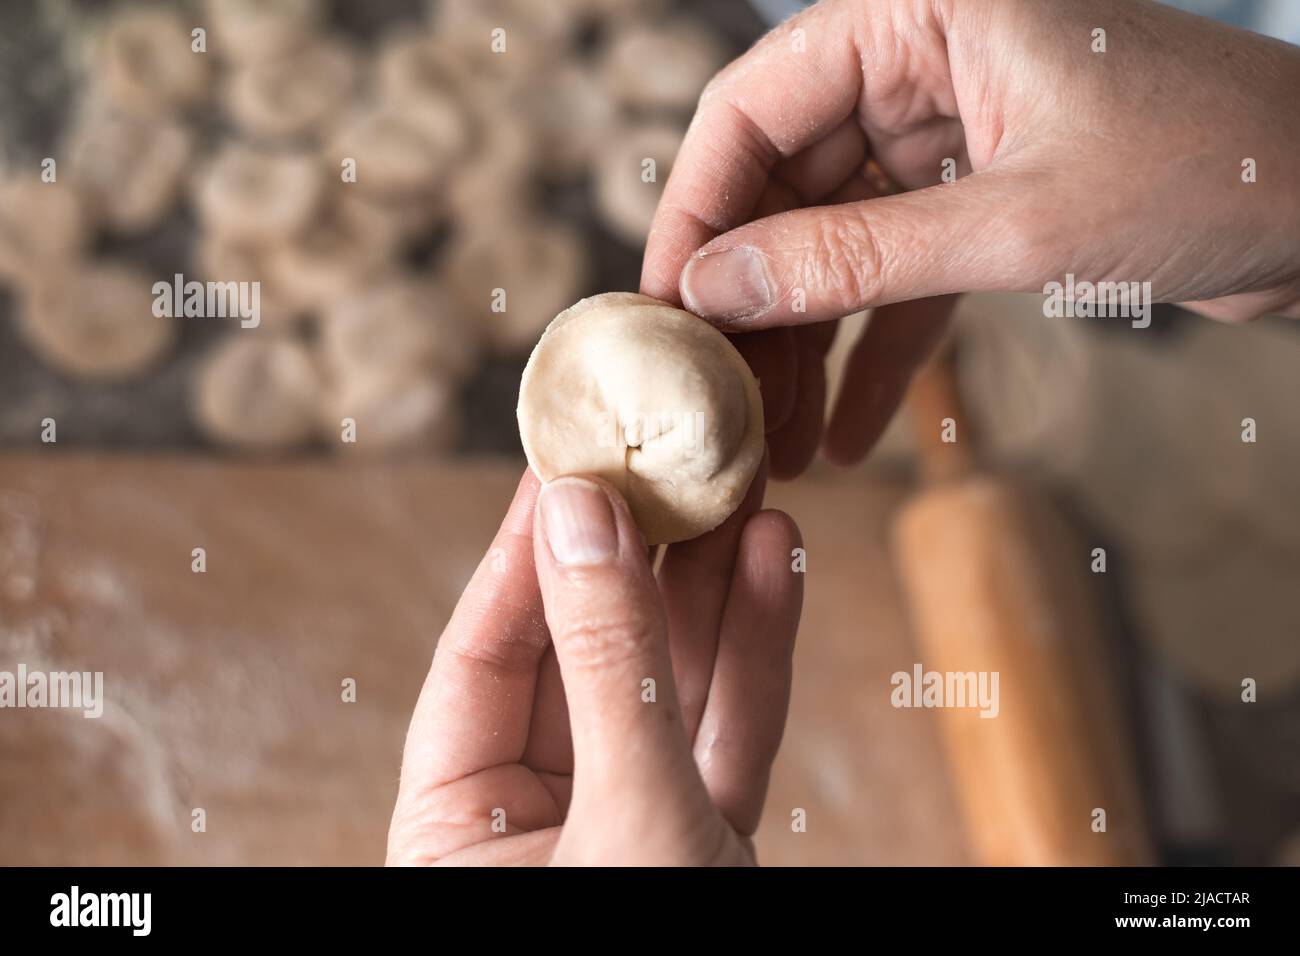 Une femme sculpte des boulettes de pâte avec garniture de viande dans la cuisine. Cuisson de délicieux boulettes maison. Banque D'Images